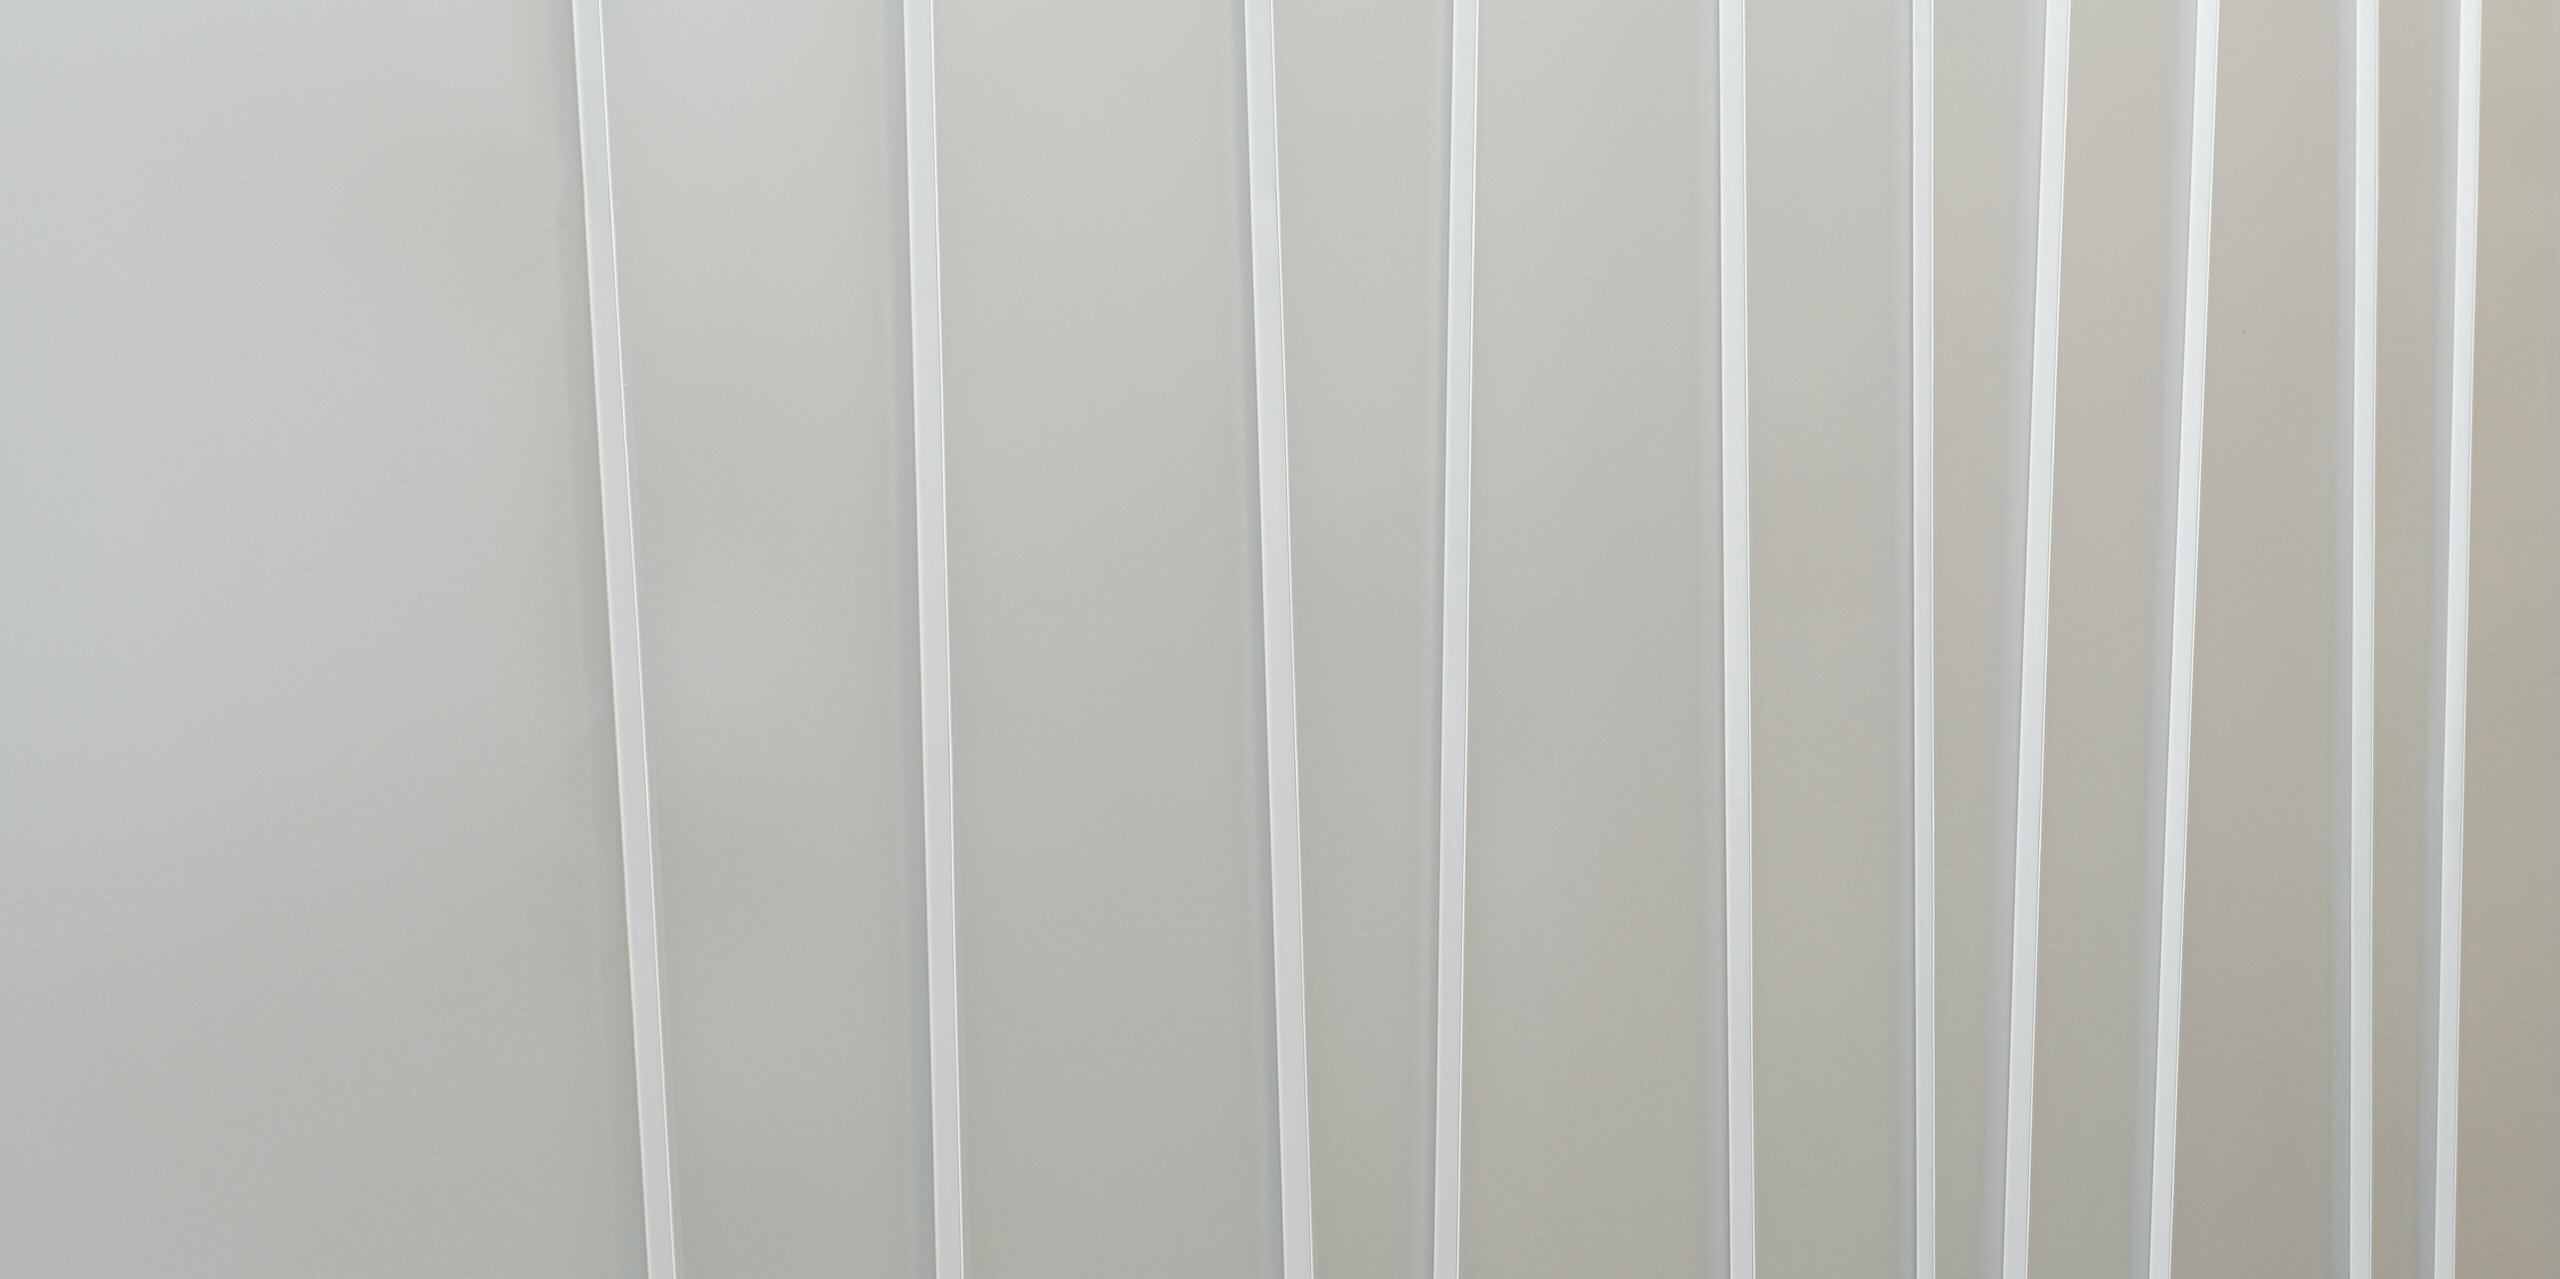 Gros plan d'un système de façade moderne en PREFALZ gris souris avec différentes largeurs de bacs. La texture épurée et minimaliste transmet une sensation d’ordre et un design contemporain.